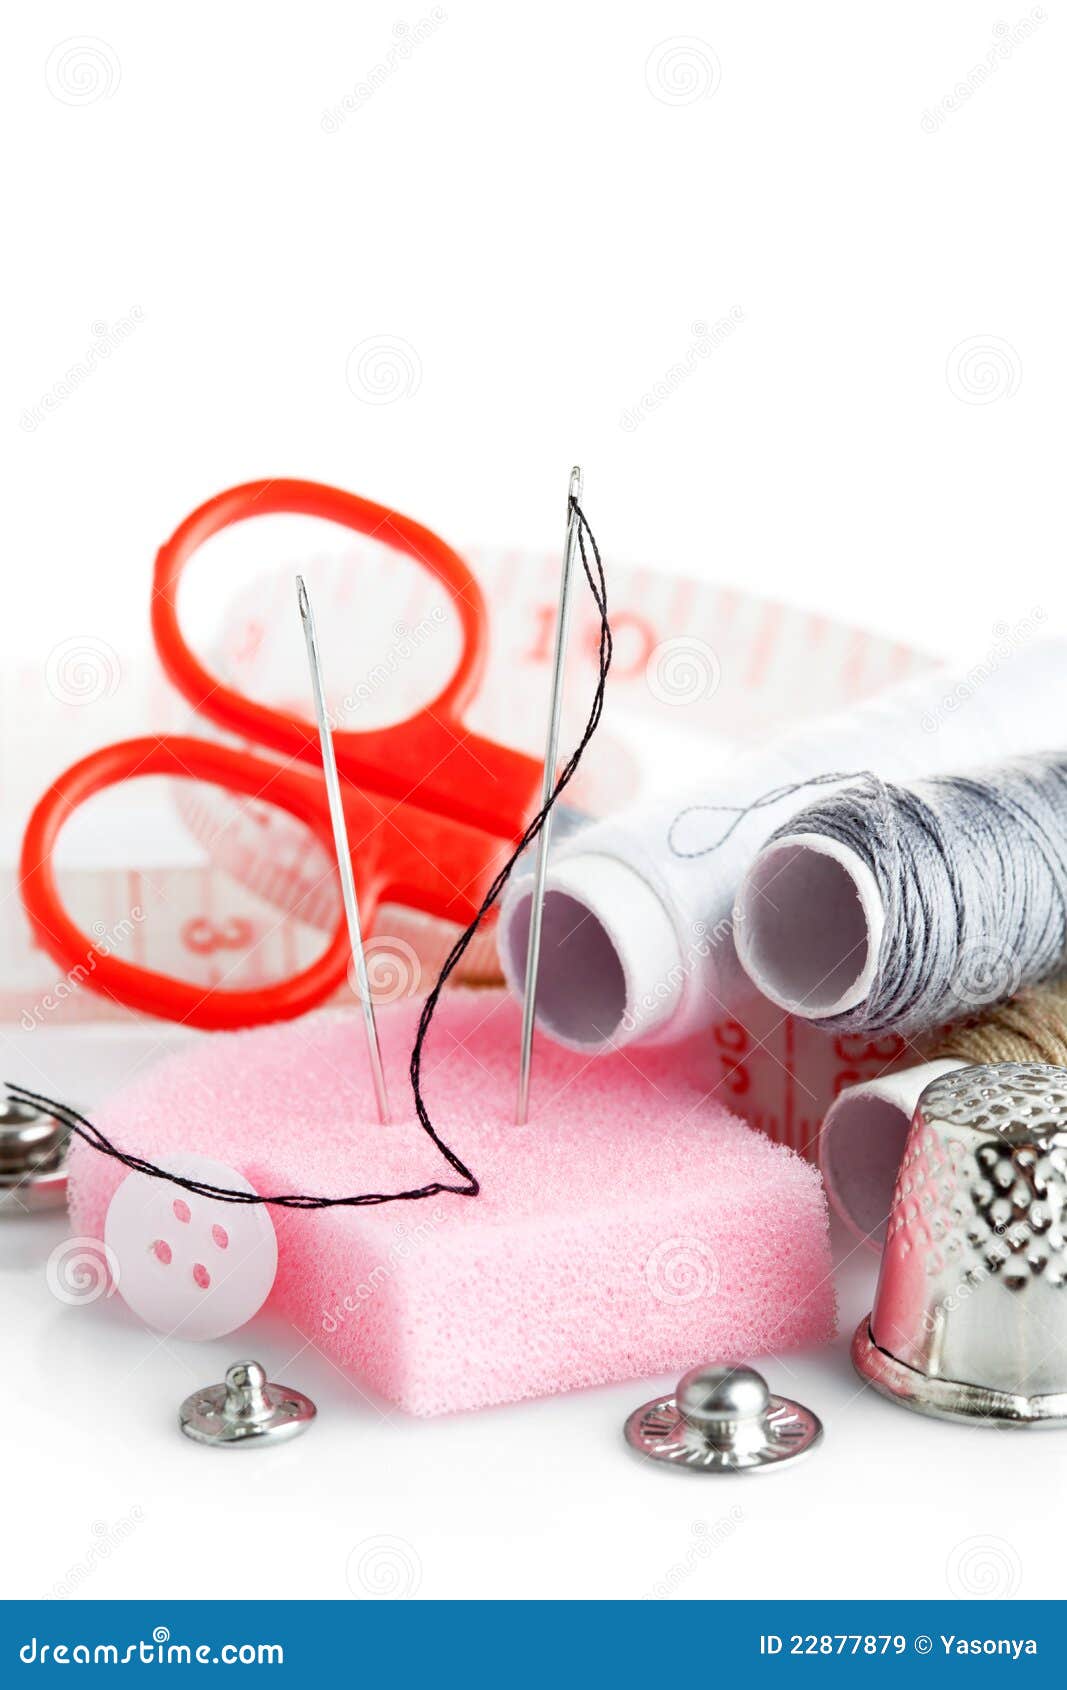 Hilfsmittel für Näharbeitgewindescheren. Hilfsmittel für Näharbeit verlegen Scheren und Bandmaß auf weißem Hintergrund